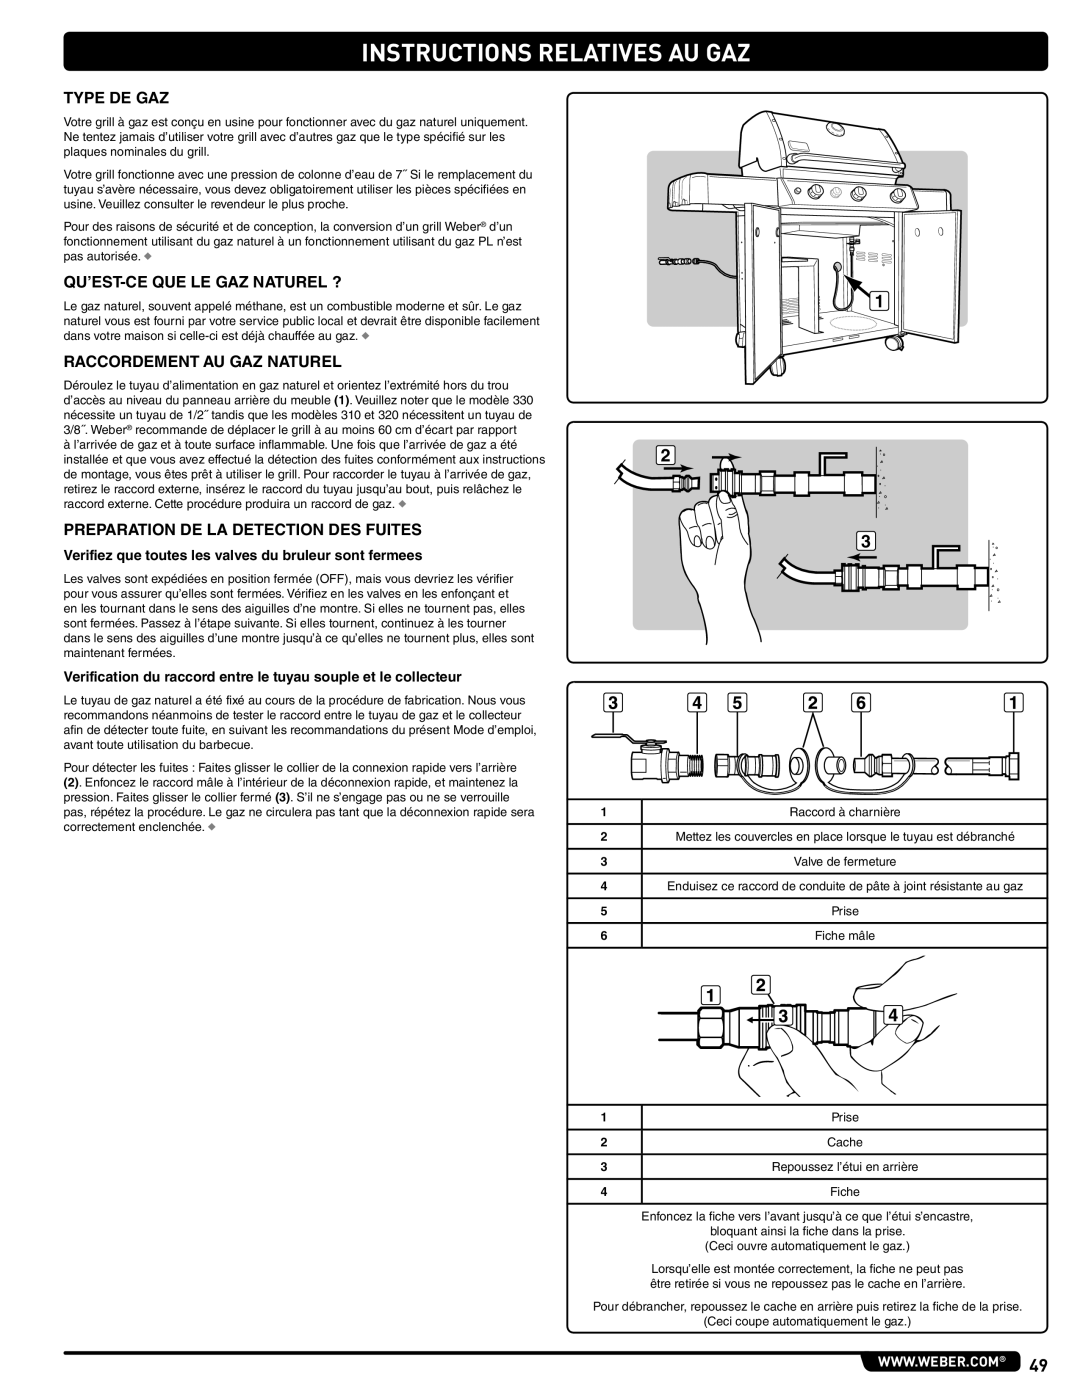 Weber 56515 Instructions Relatives Au Gaz, Verifiez que toutes les valves du bruleur sont fermees, Prise, Cache, Fiche 